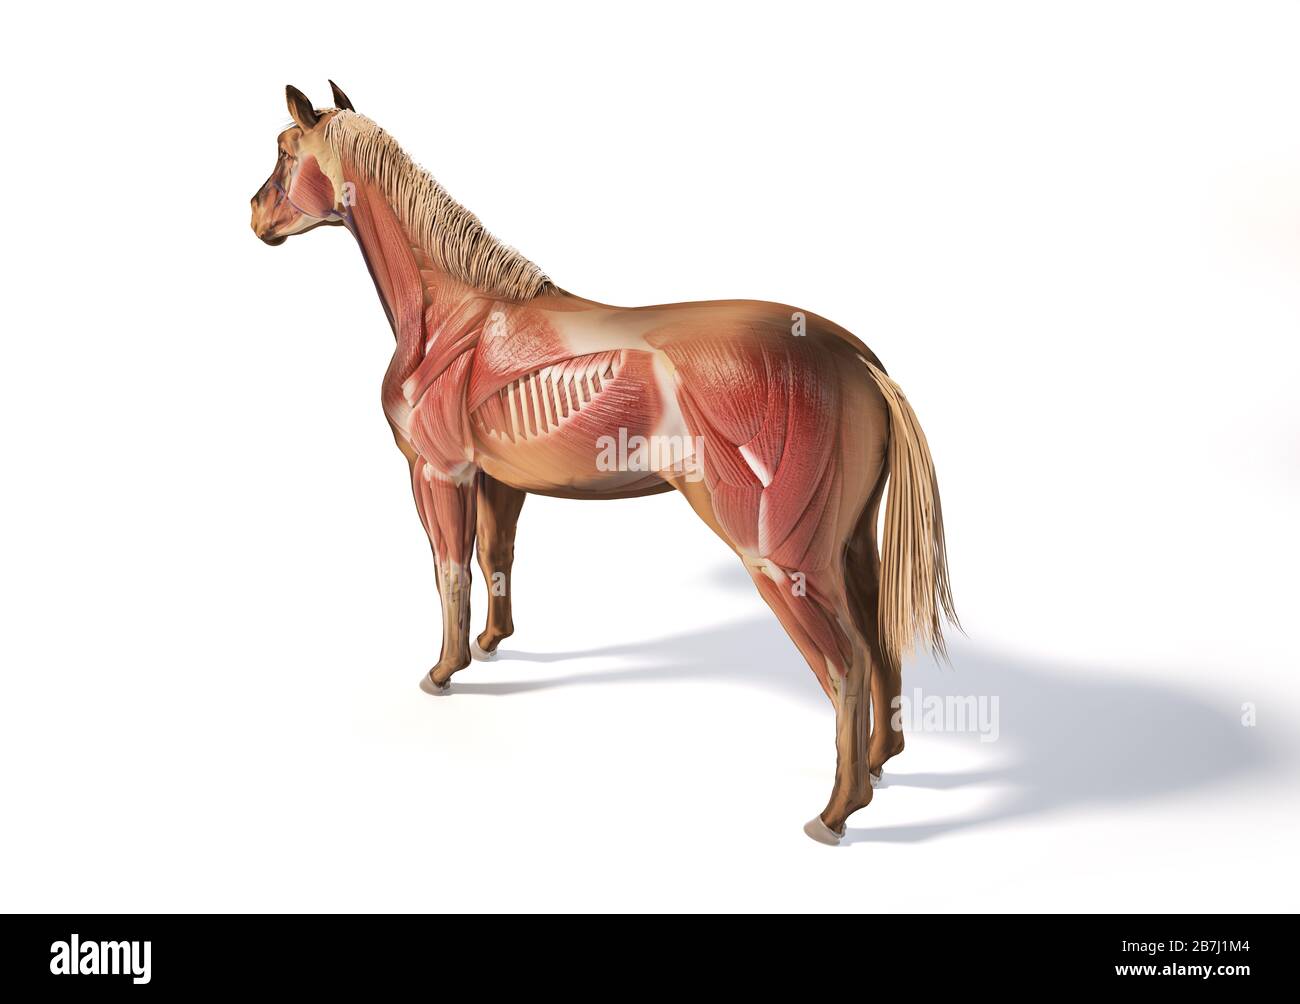 Anatomia del cavallo. Sistema muscolare con effetto fantasma. Posteriore - vista laterale della prospettiva degli uccelli su sfondo bianco. Tracciato di ritaglio incluso. Foto Stock